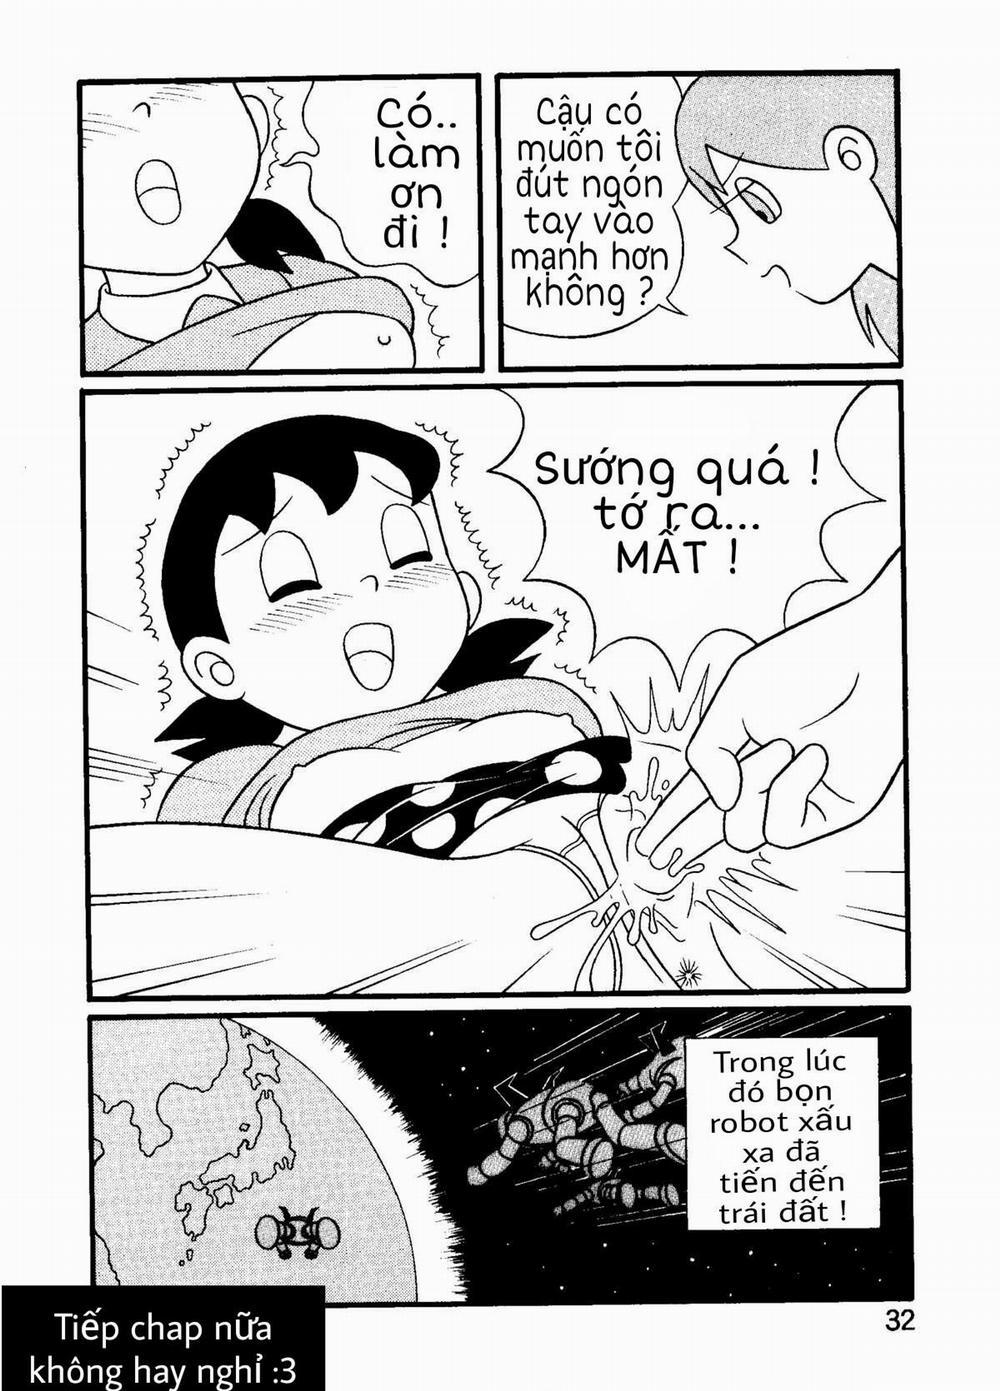 Tuyển Tập Doraemon Doujinshi 18+ Chương 12 Xuka v c n ng Robot Trang 8